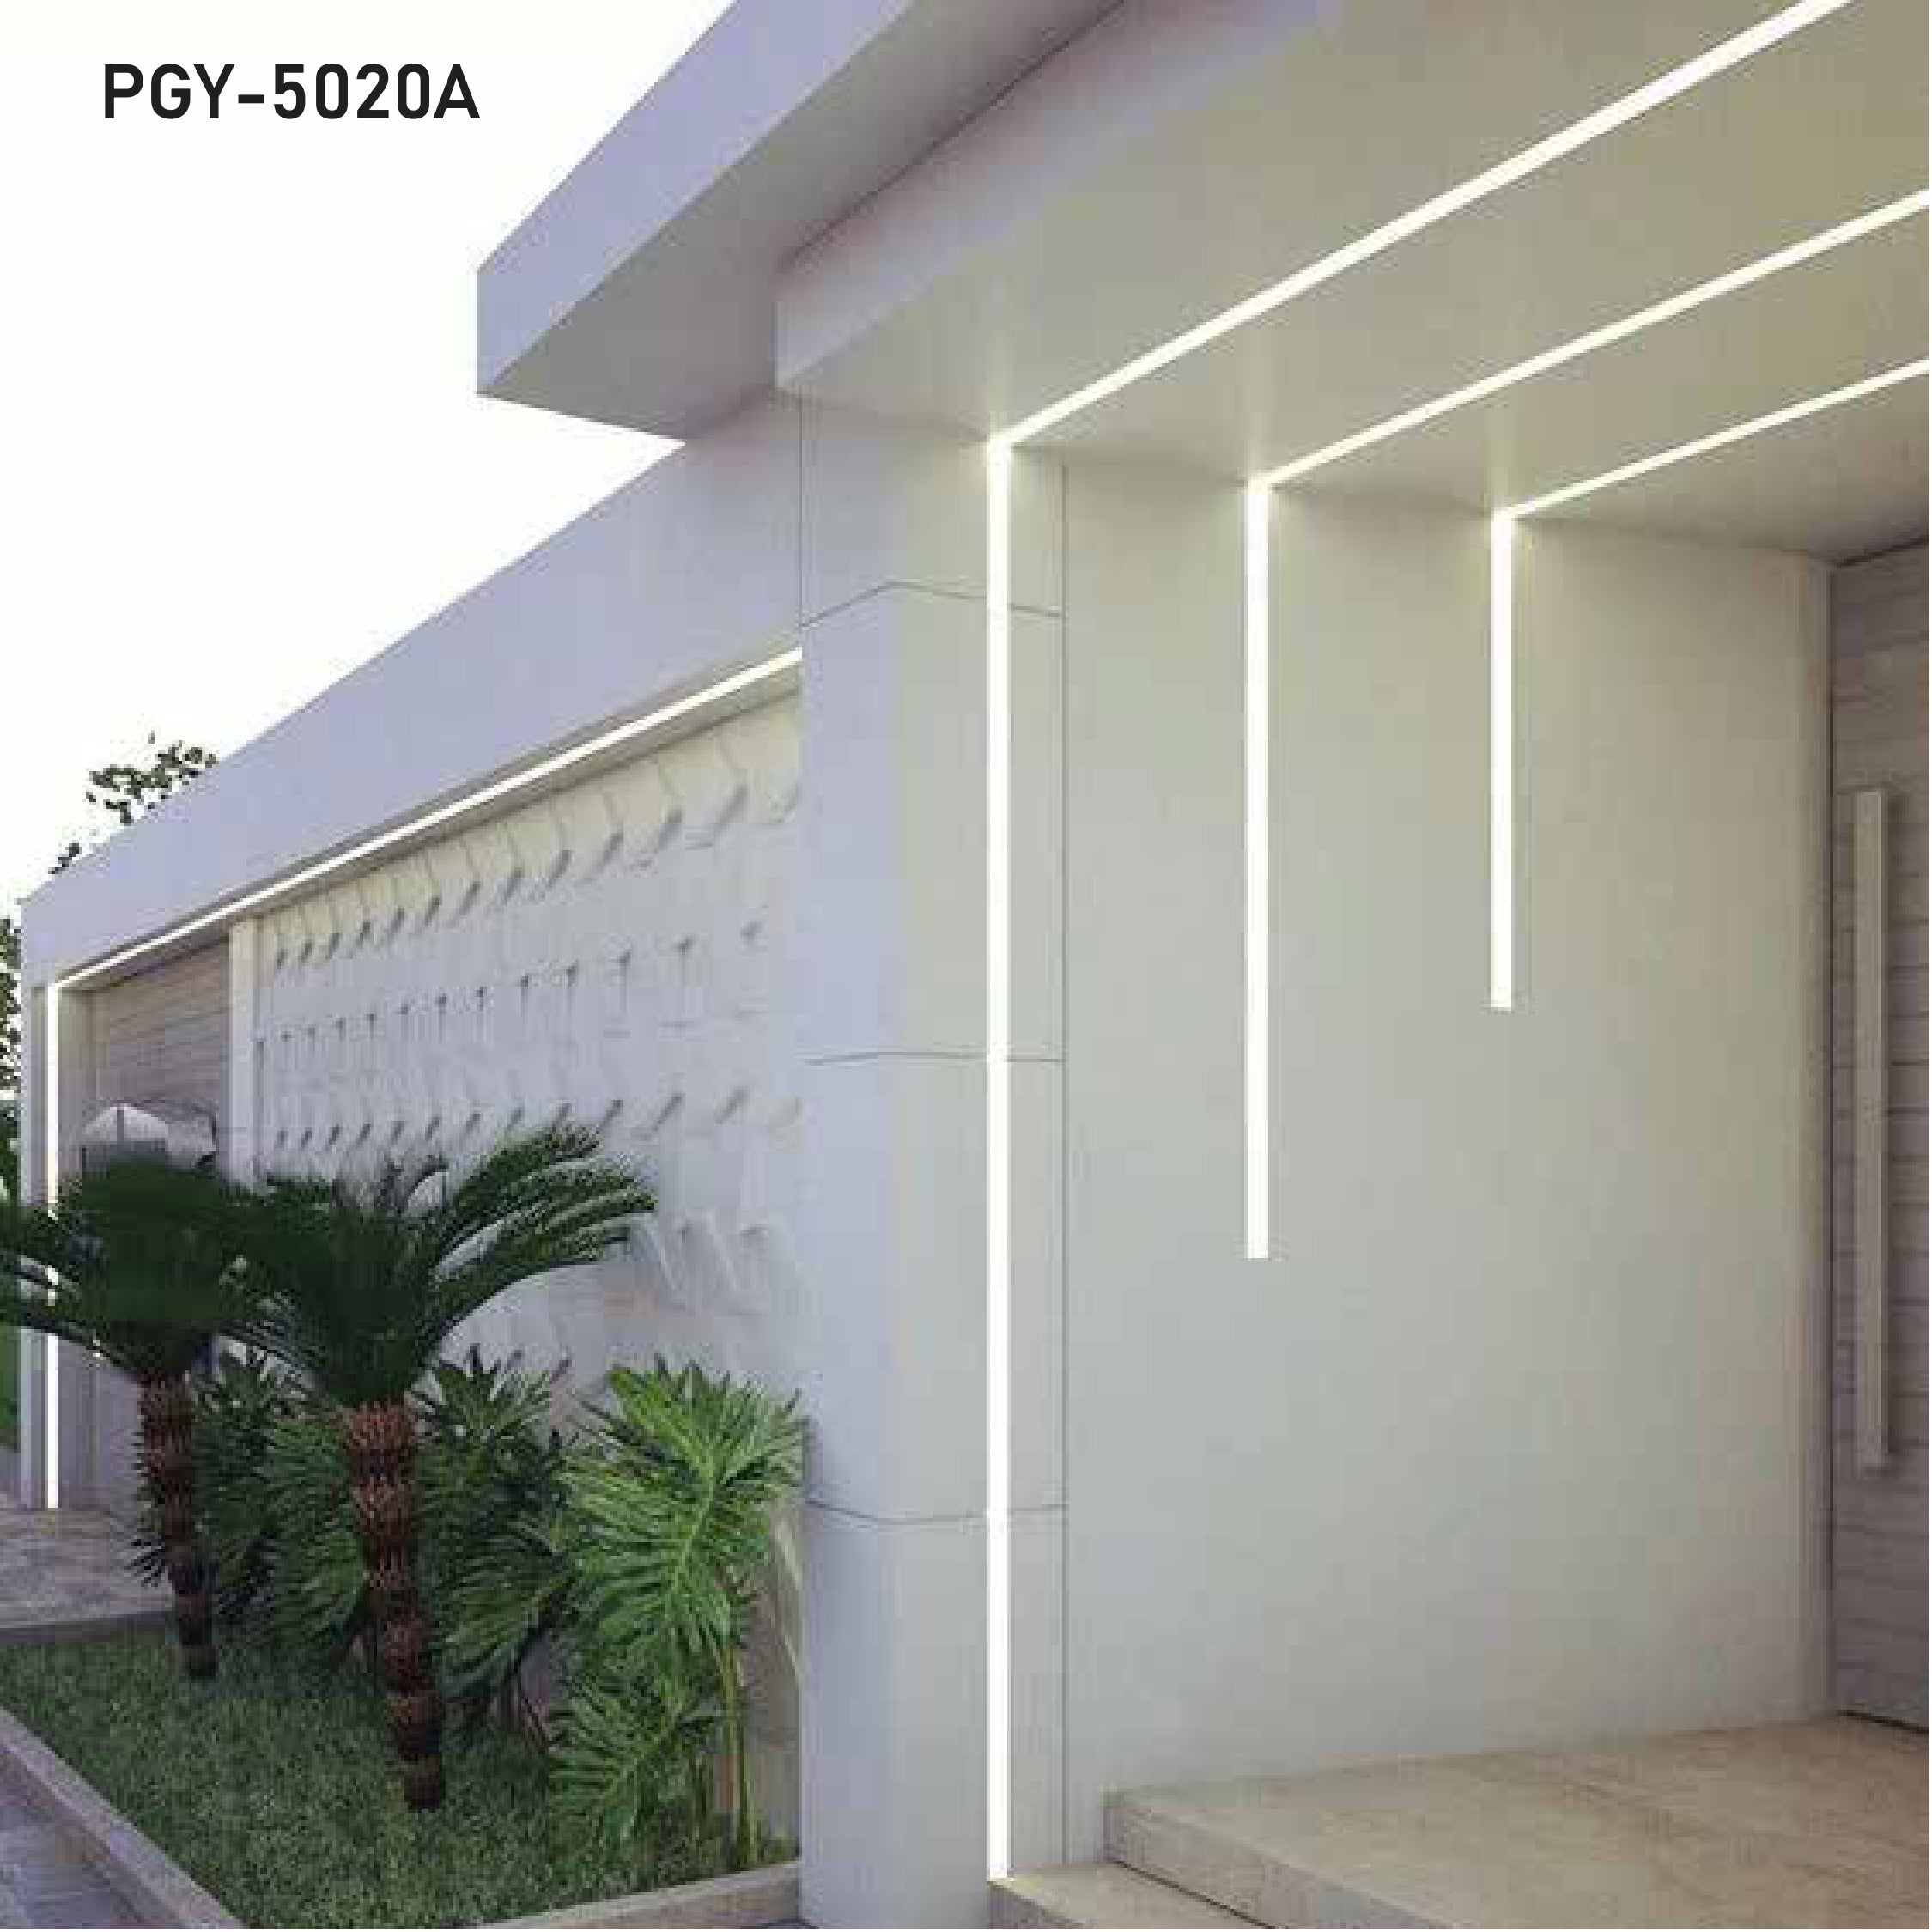 Aluminium Profile Light | PGY-5020A